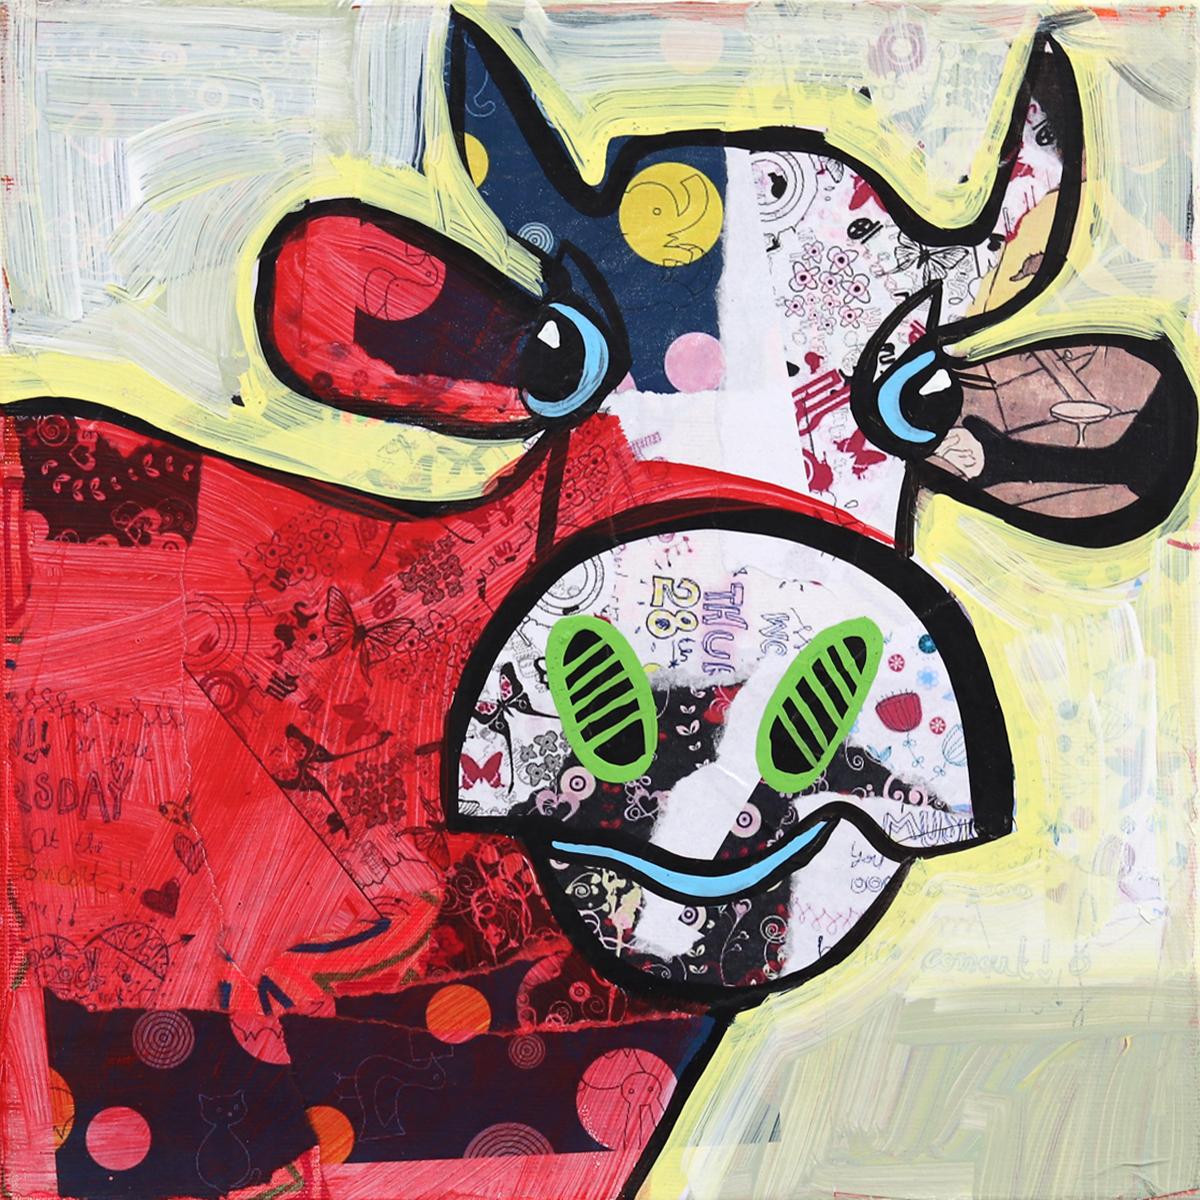 Superbe peinture d'animaux géorgienne originale - Happy Pop Art - Peinture de vache rouge - Mixed Media Art de Fredi Gertsch